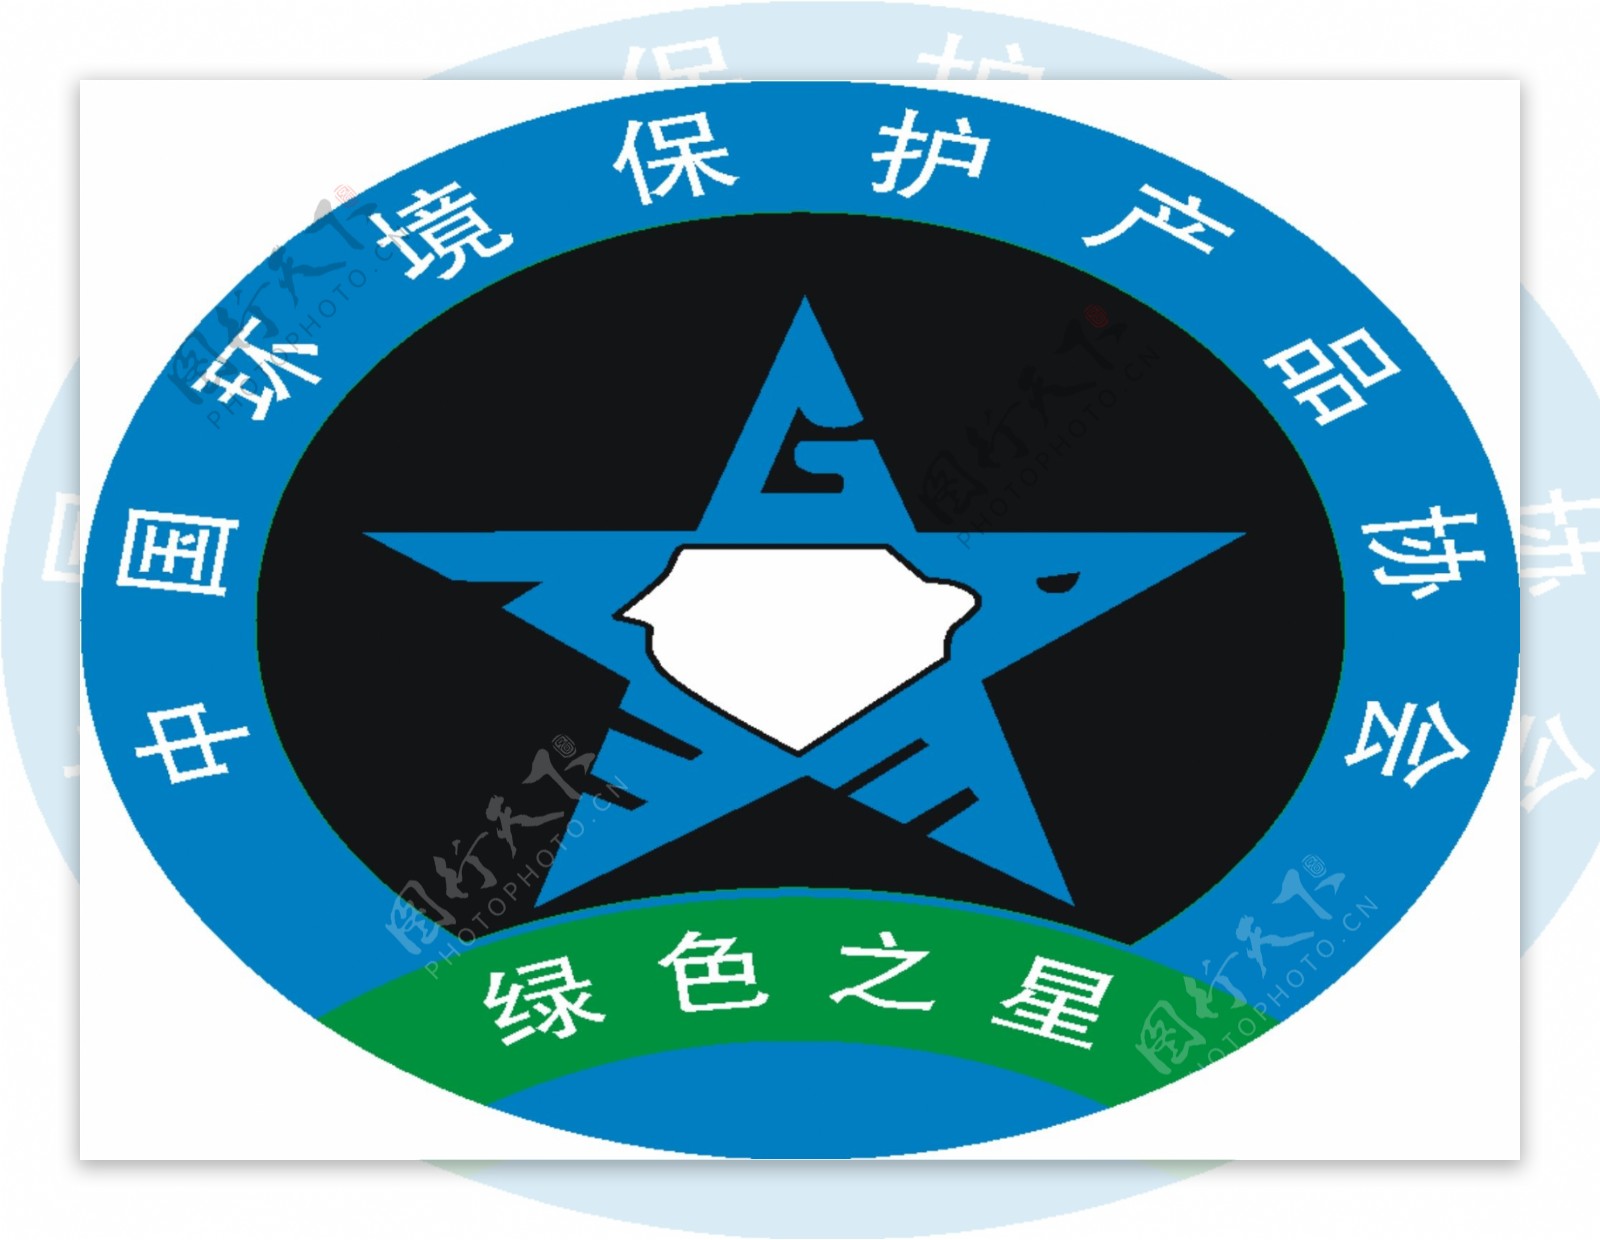 中国环境保护产品协会